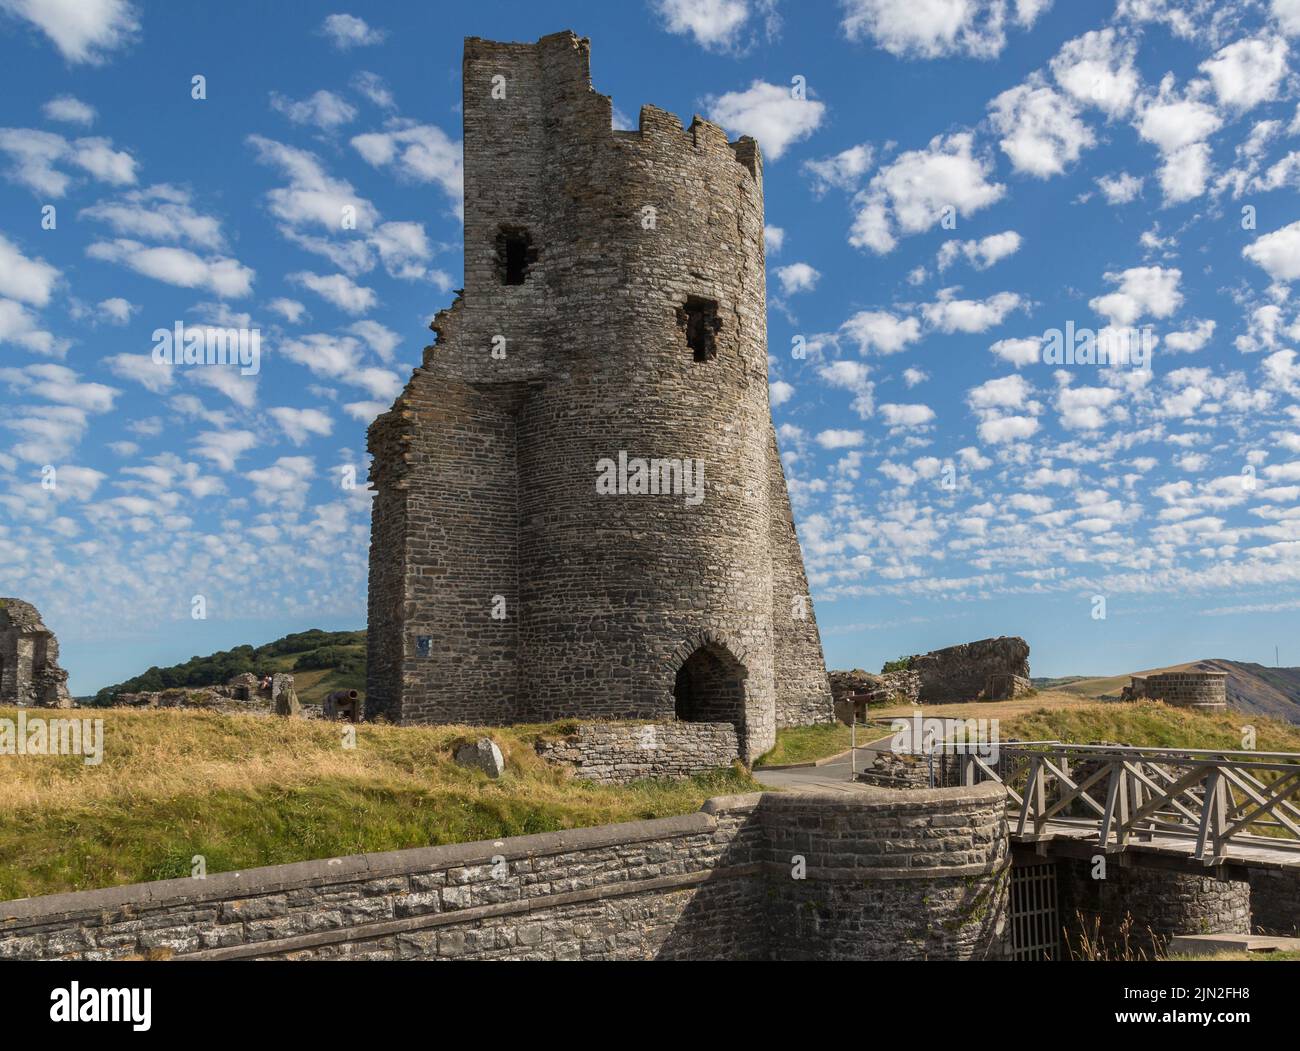 Vestiges de la porte nord de la tour au château d'Aberystwyth, une forteresse édouardienne classée de catégorie I, située dans la ville balnéaire d'Aberystwyth, au pays de Galles. Banque D'Images